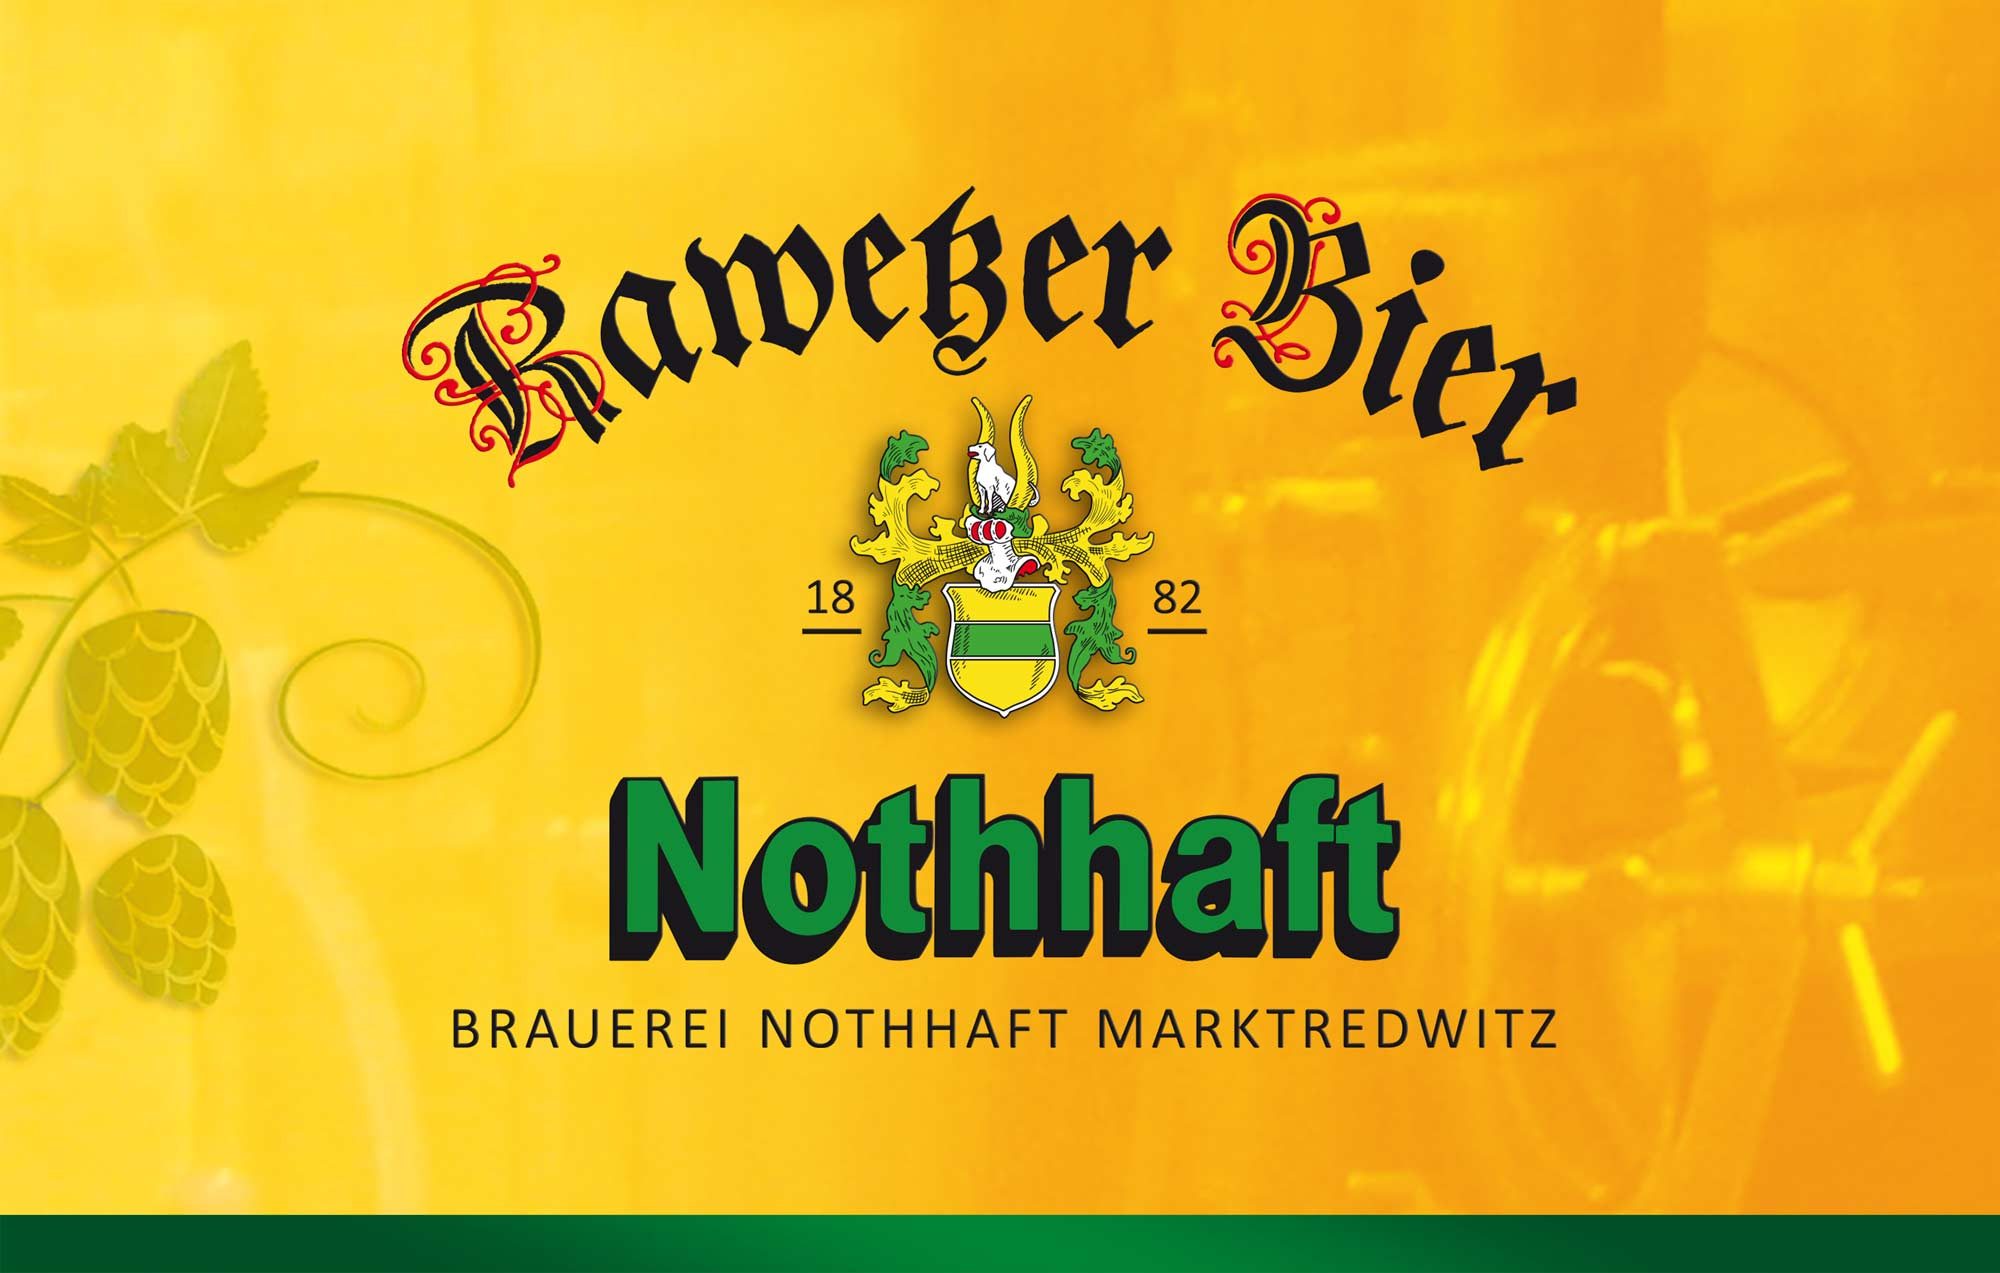 bg-nothhaft-rawetzer-bier